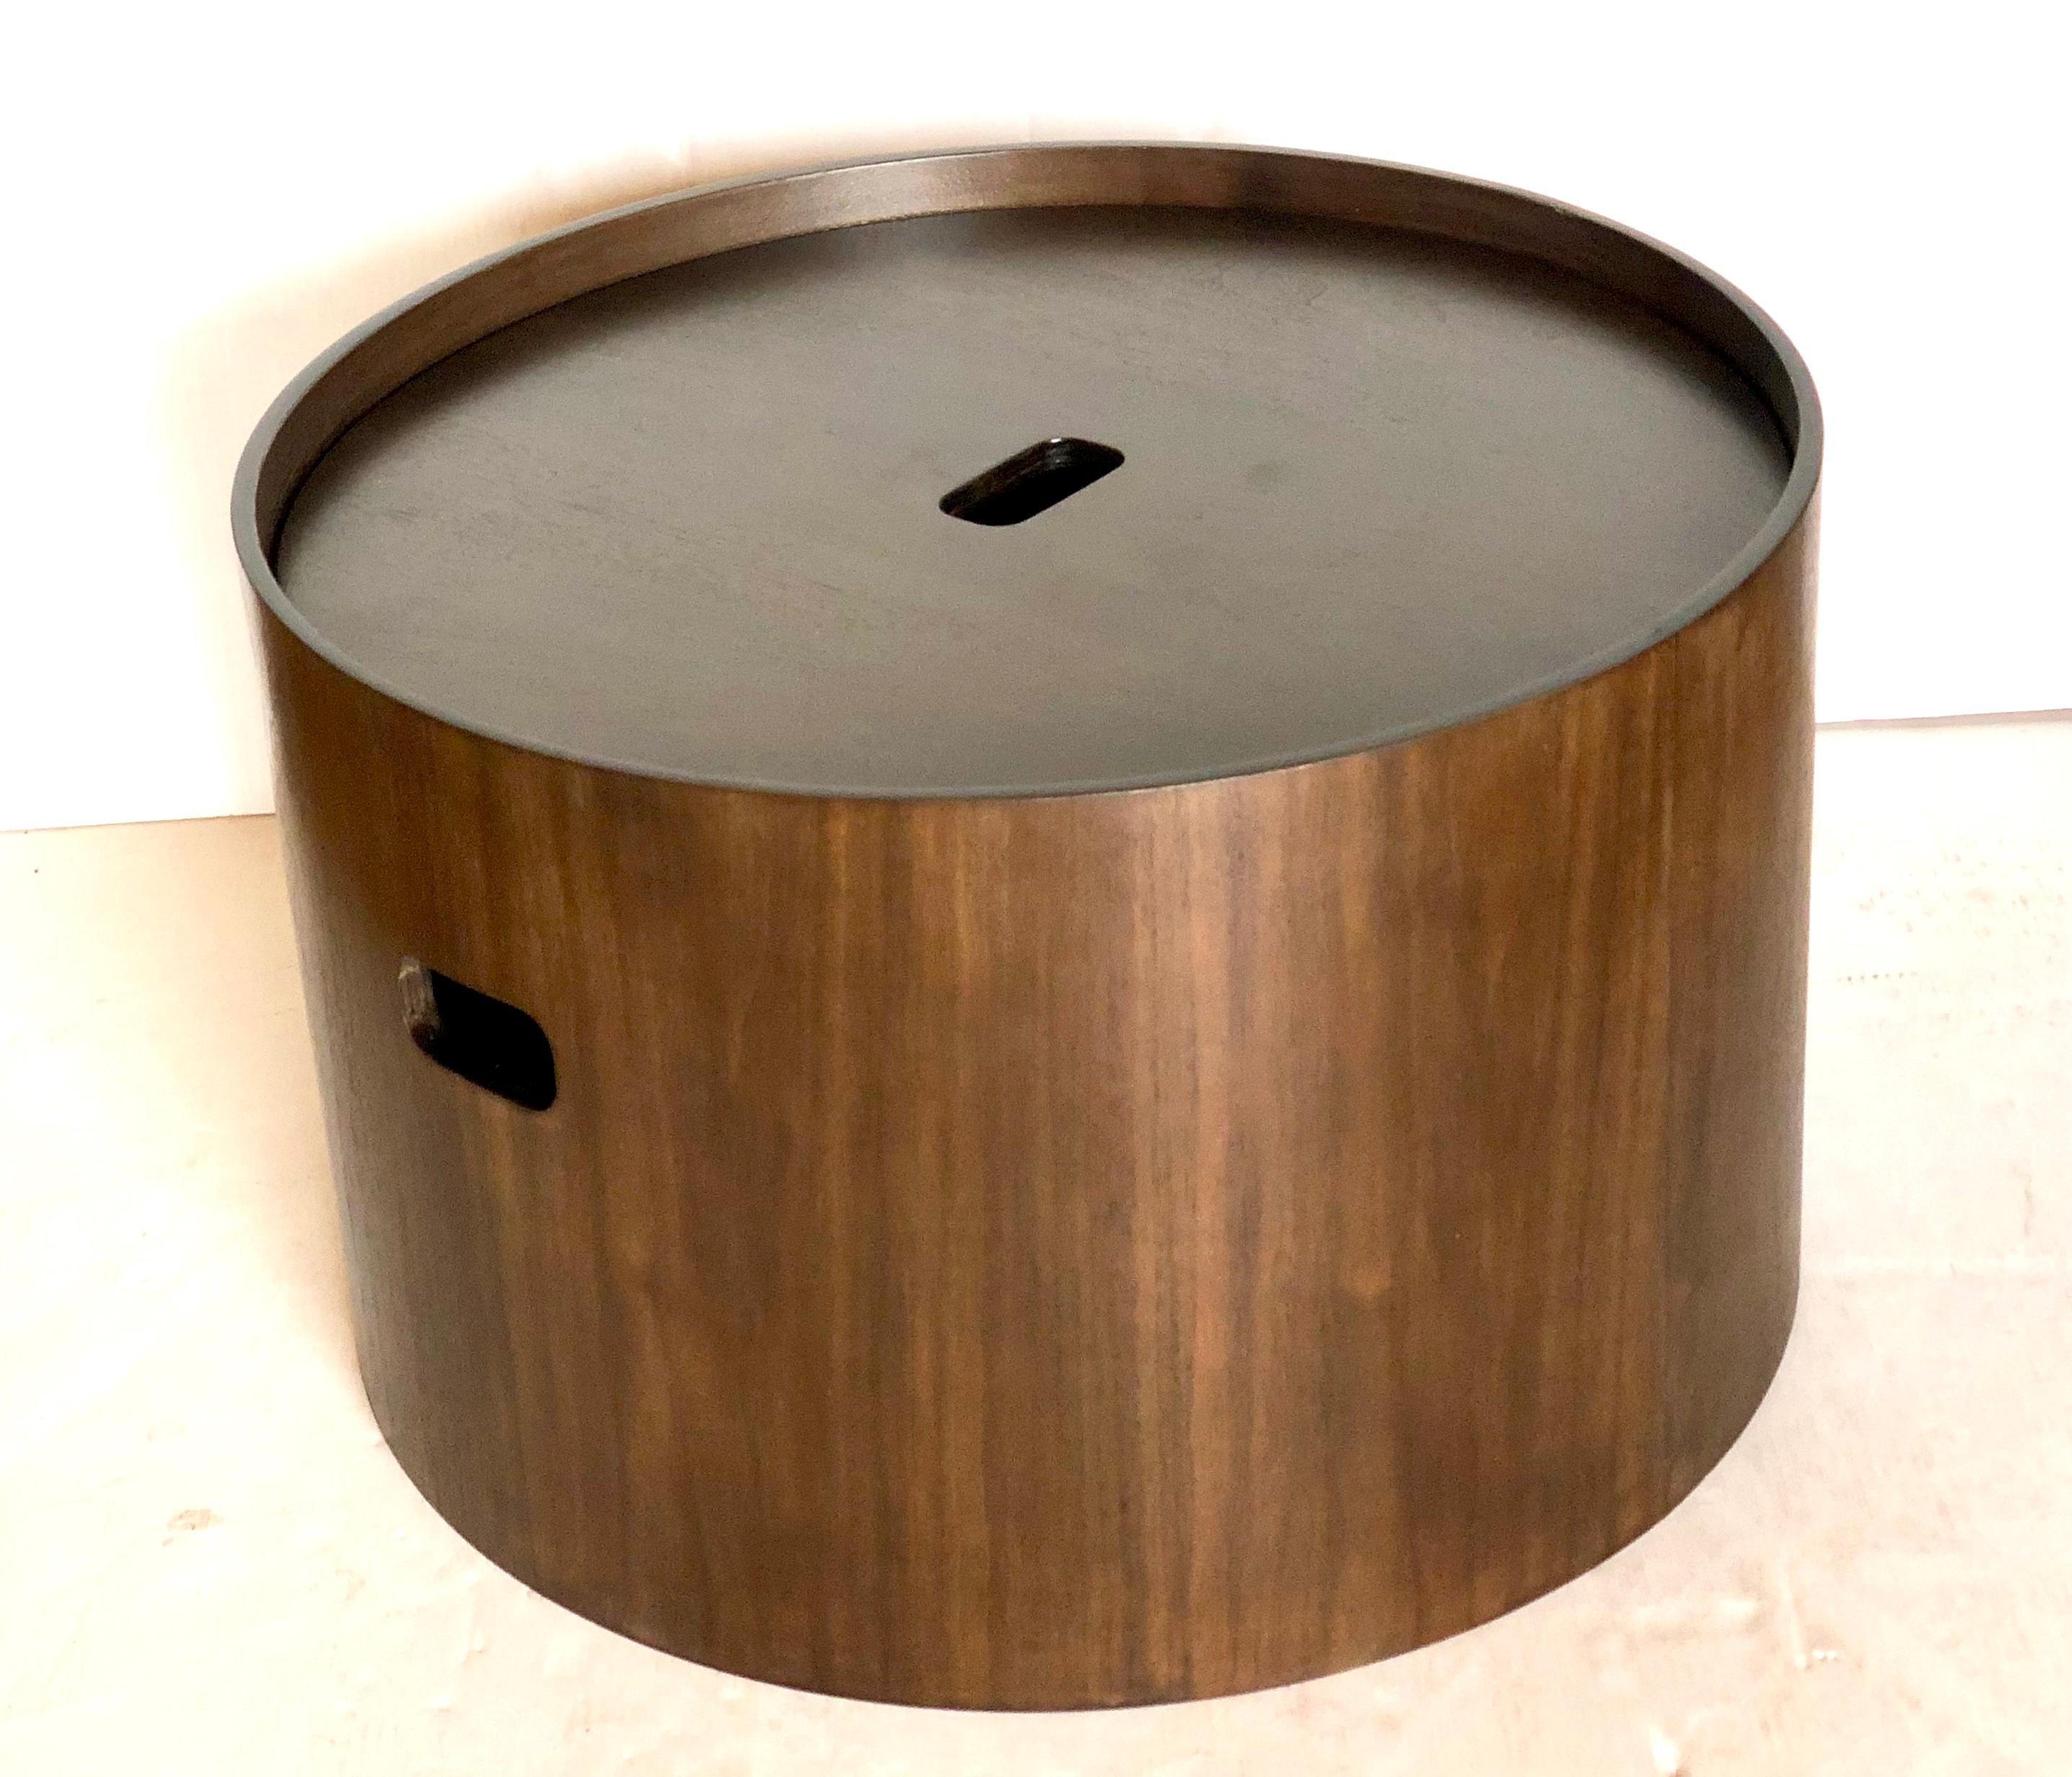 Frisch nachgearbeitet in dunklem Walnussholz runder Zylinder Couchtisch/Aufbewahrungsbehälter, mit Deckel tolles und praktisches Design.